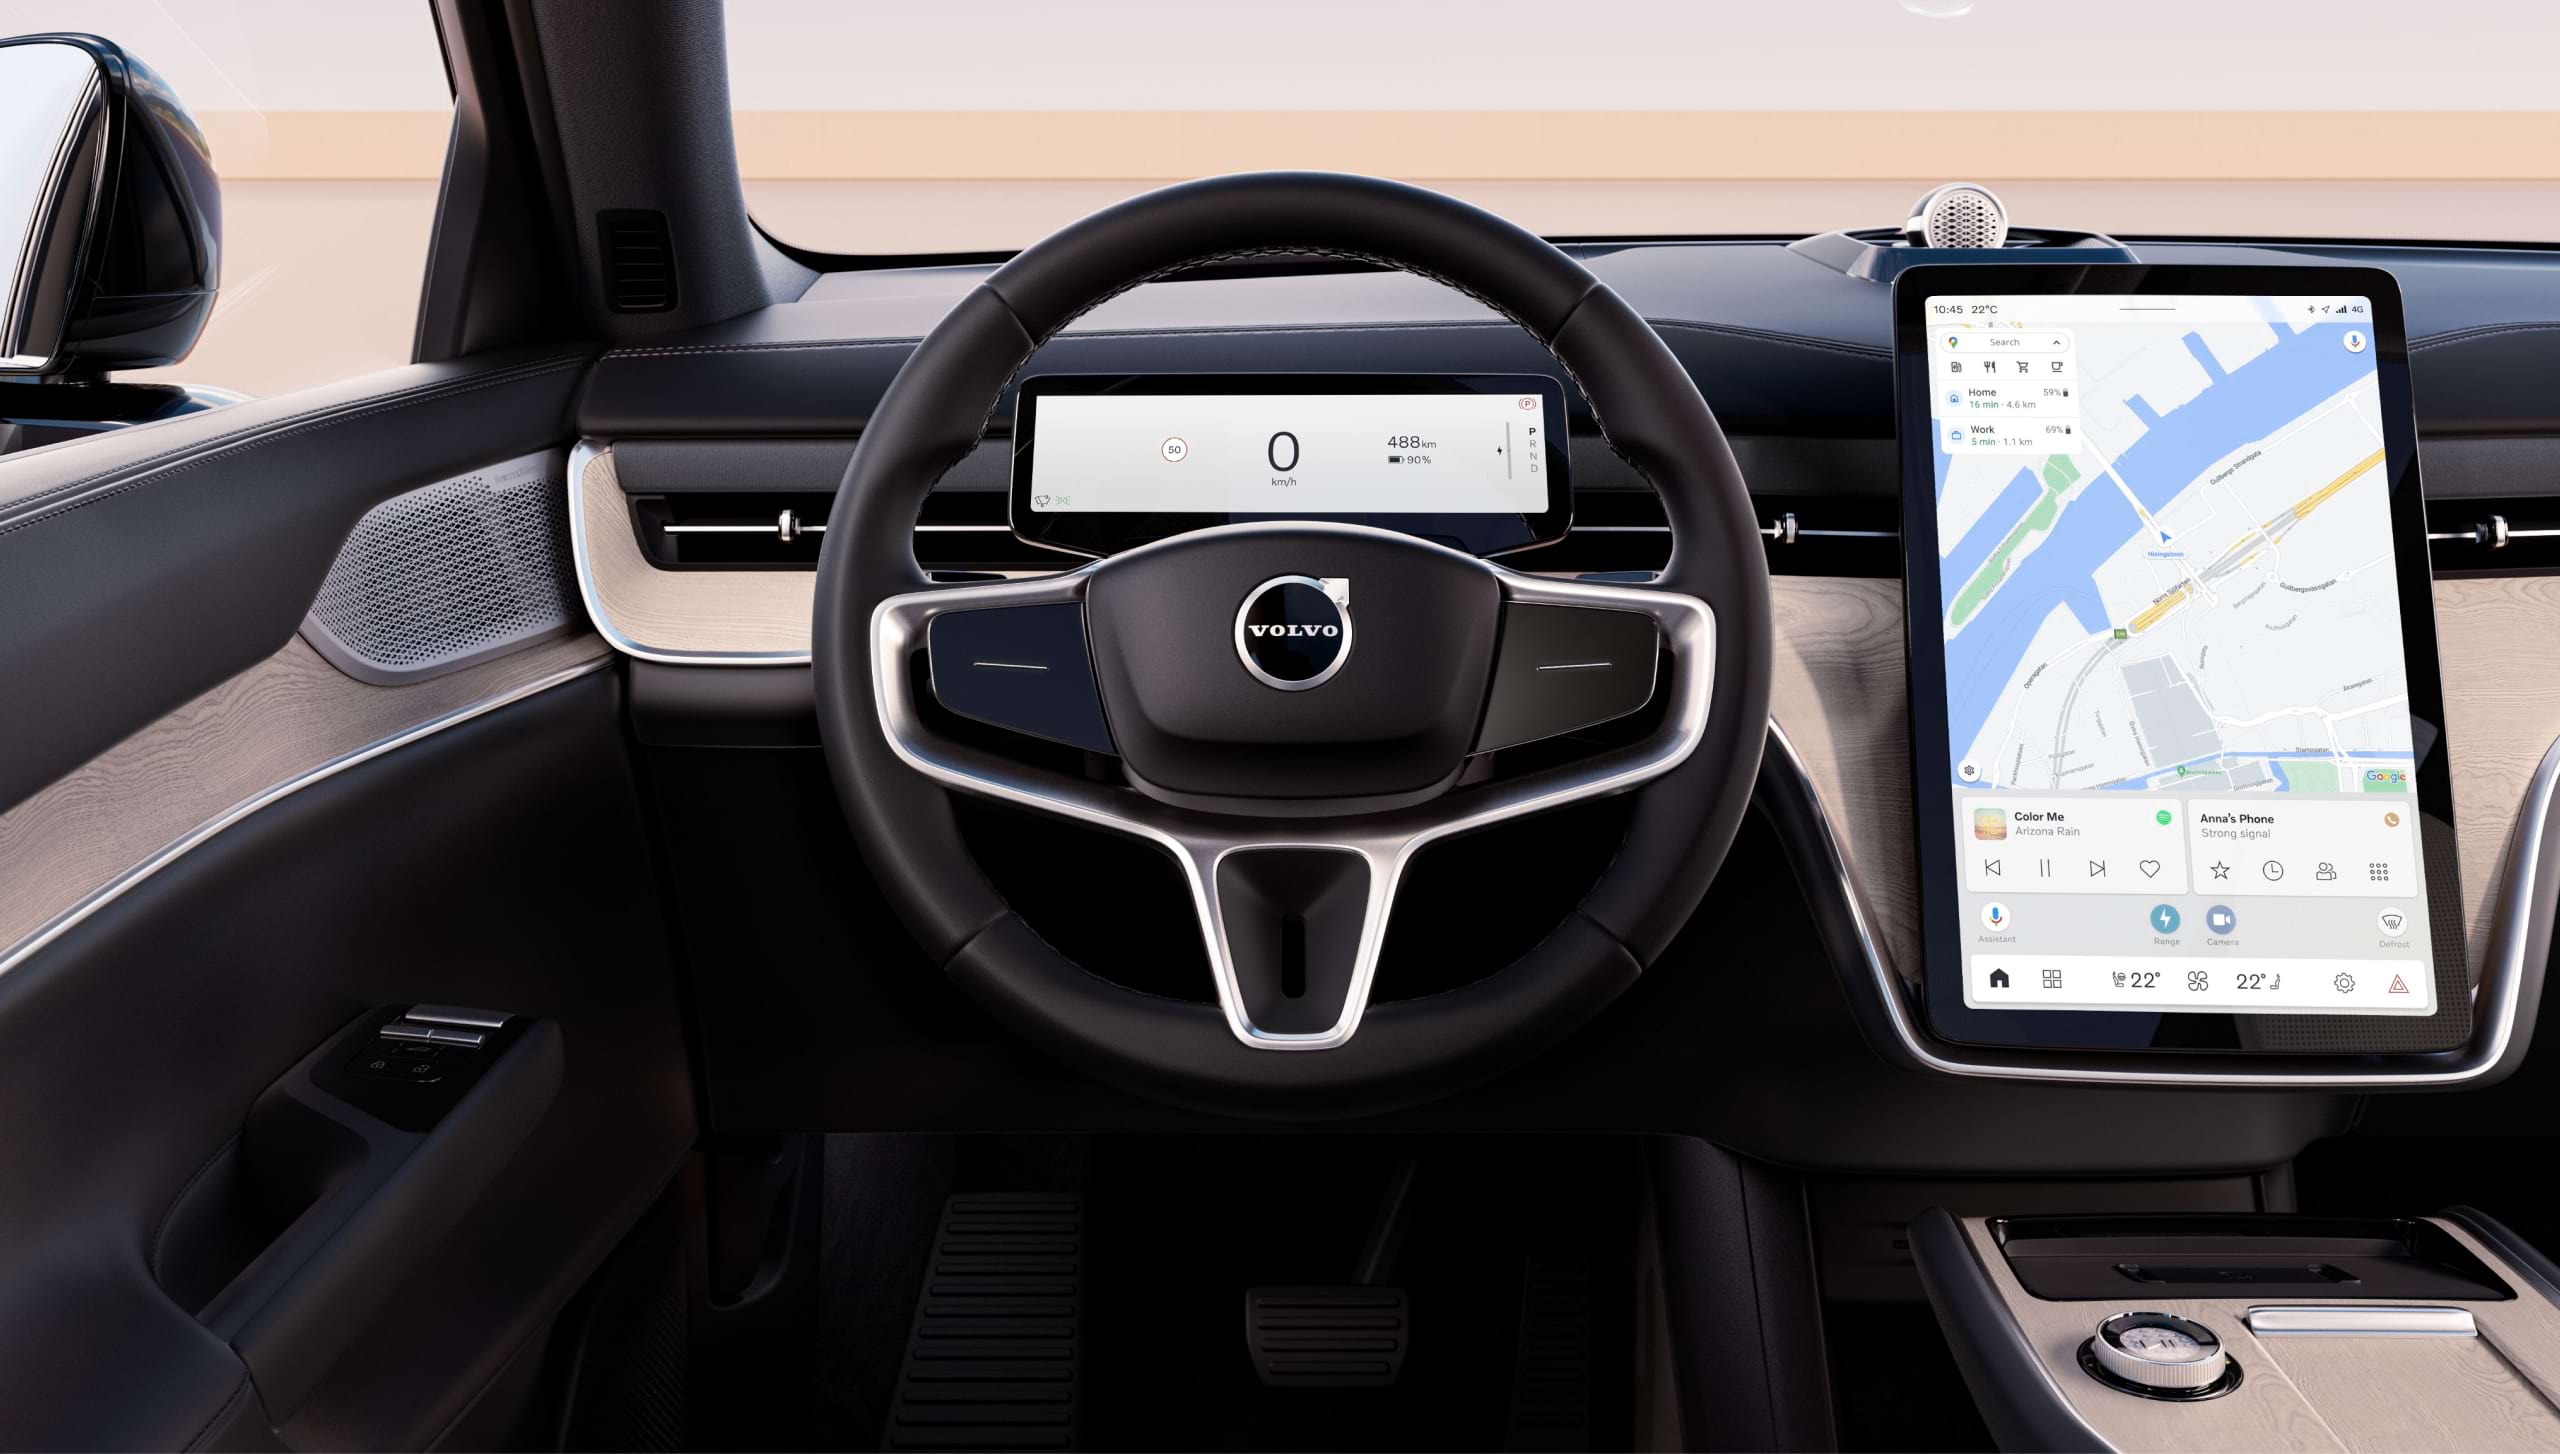 Grande ecrã tátil de 14,5" sem molduras para o sistema de "Infotainement" inteligente do Volvo EX90